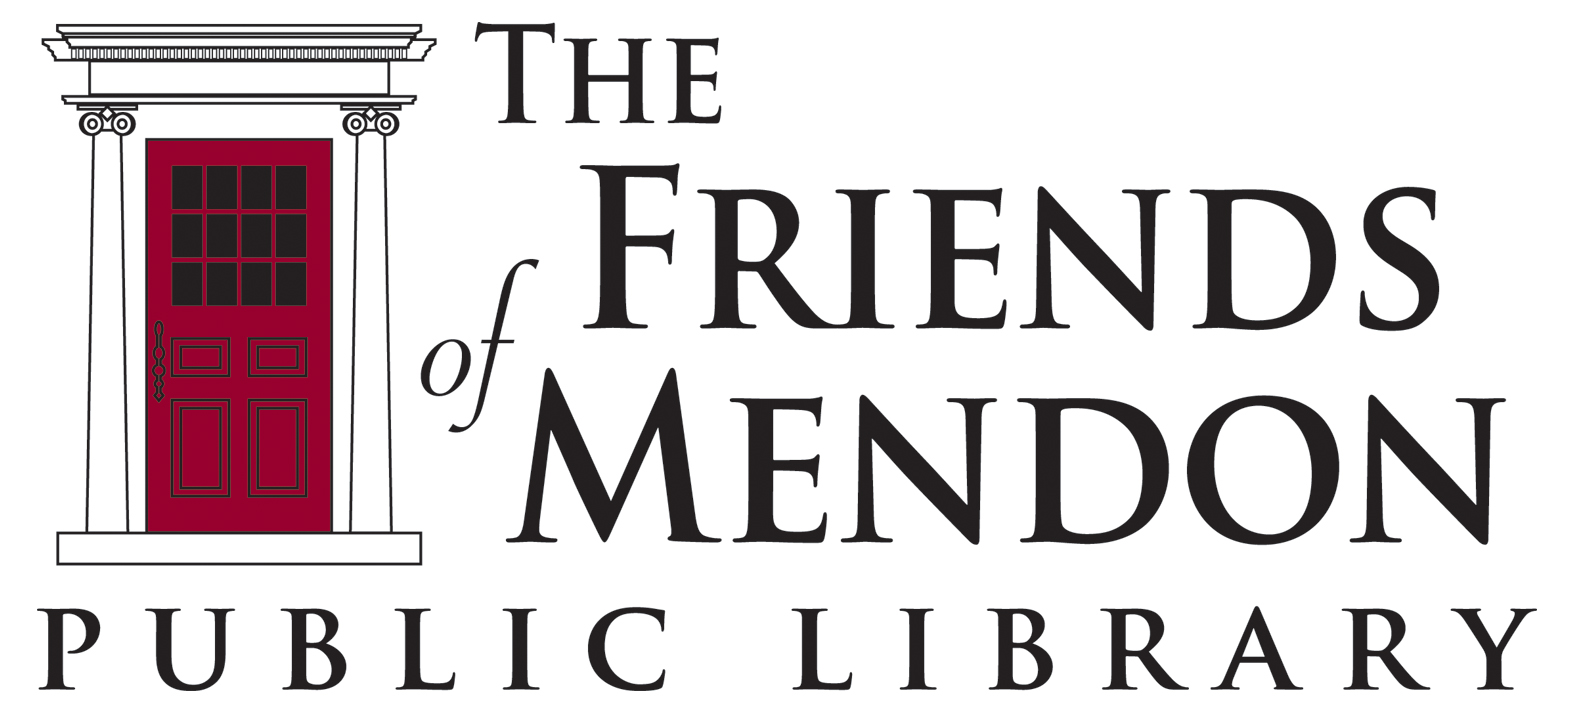 Mendon Public Library